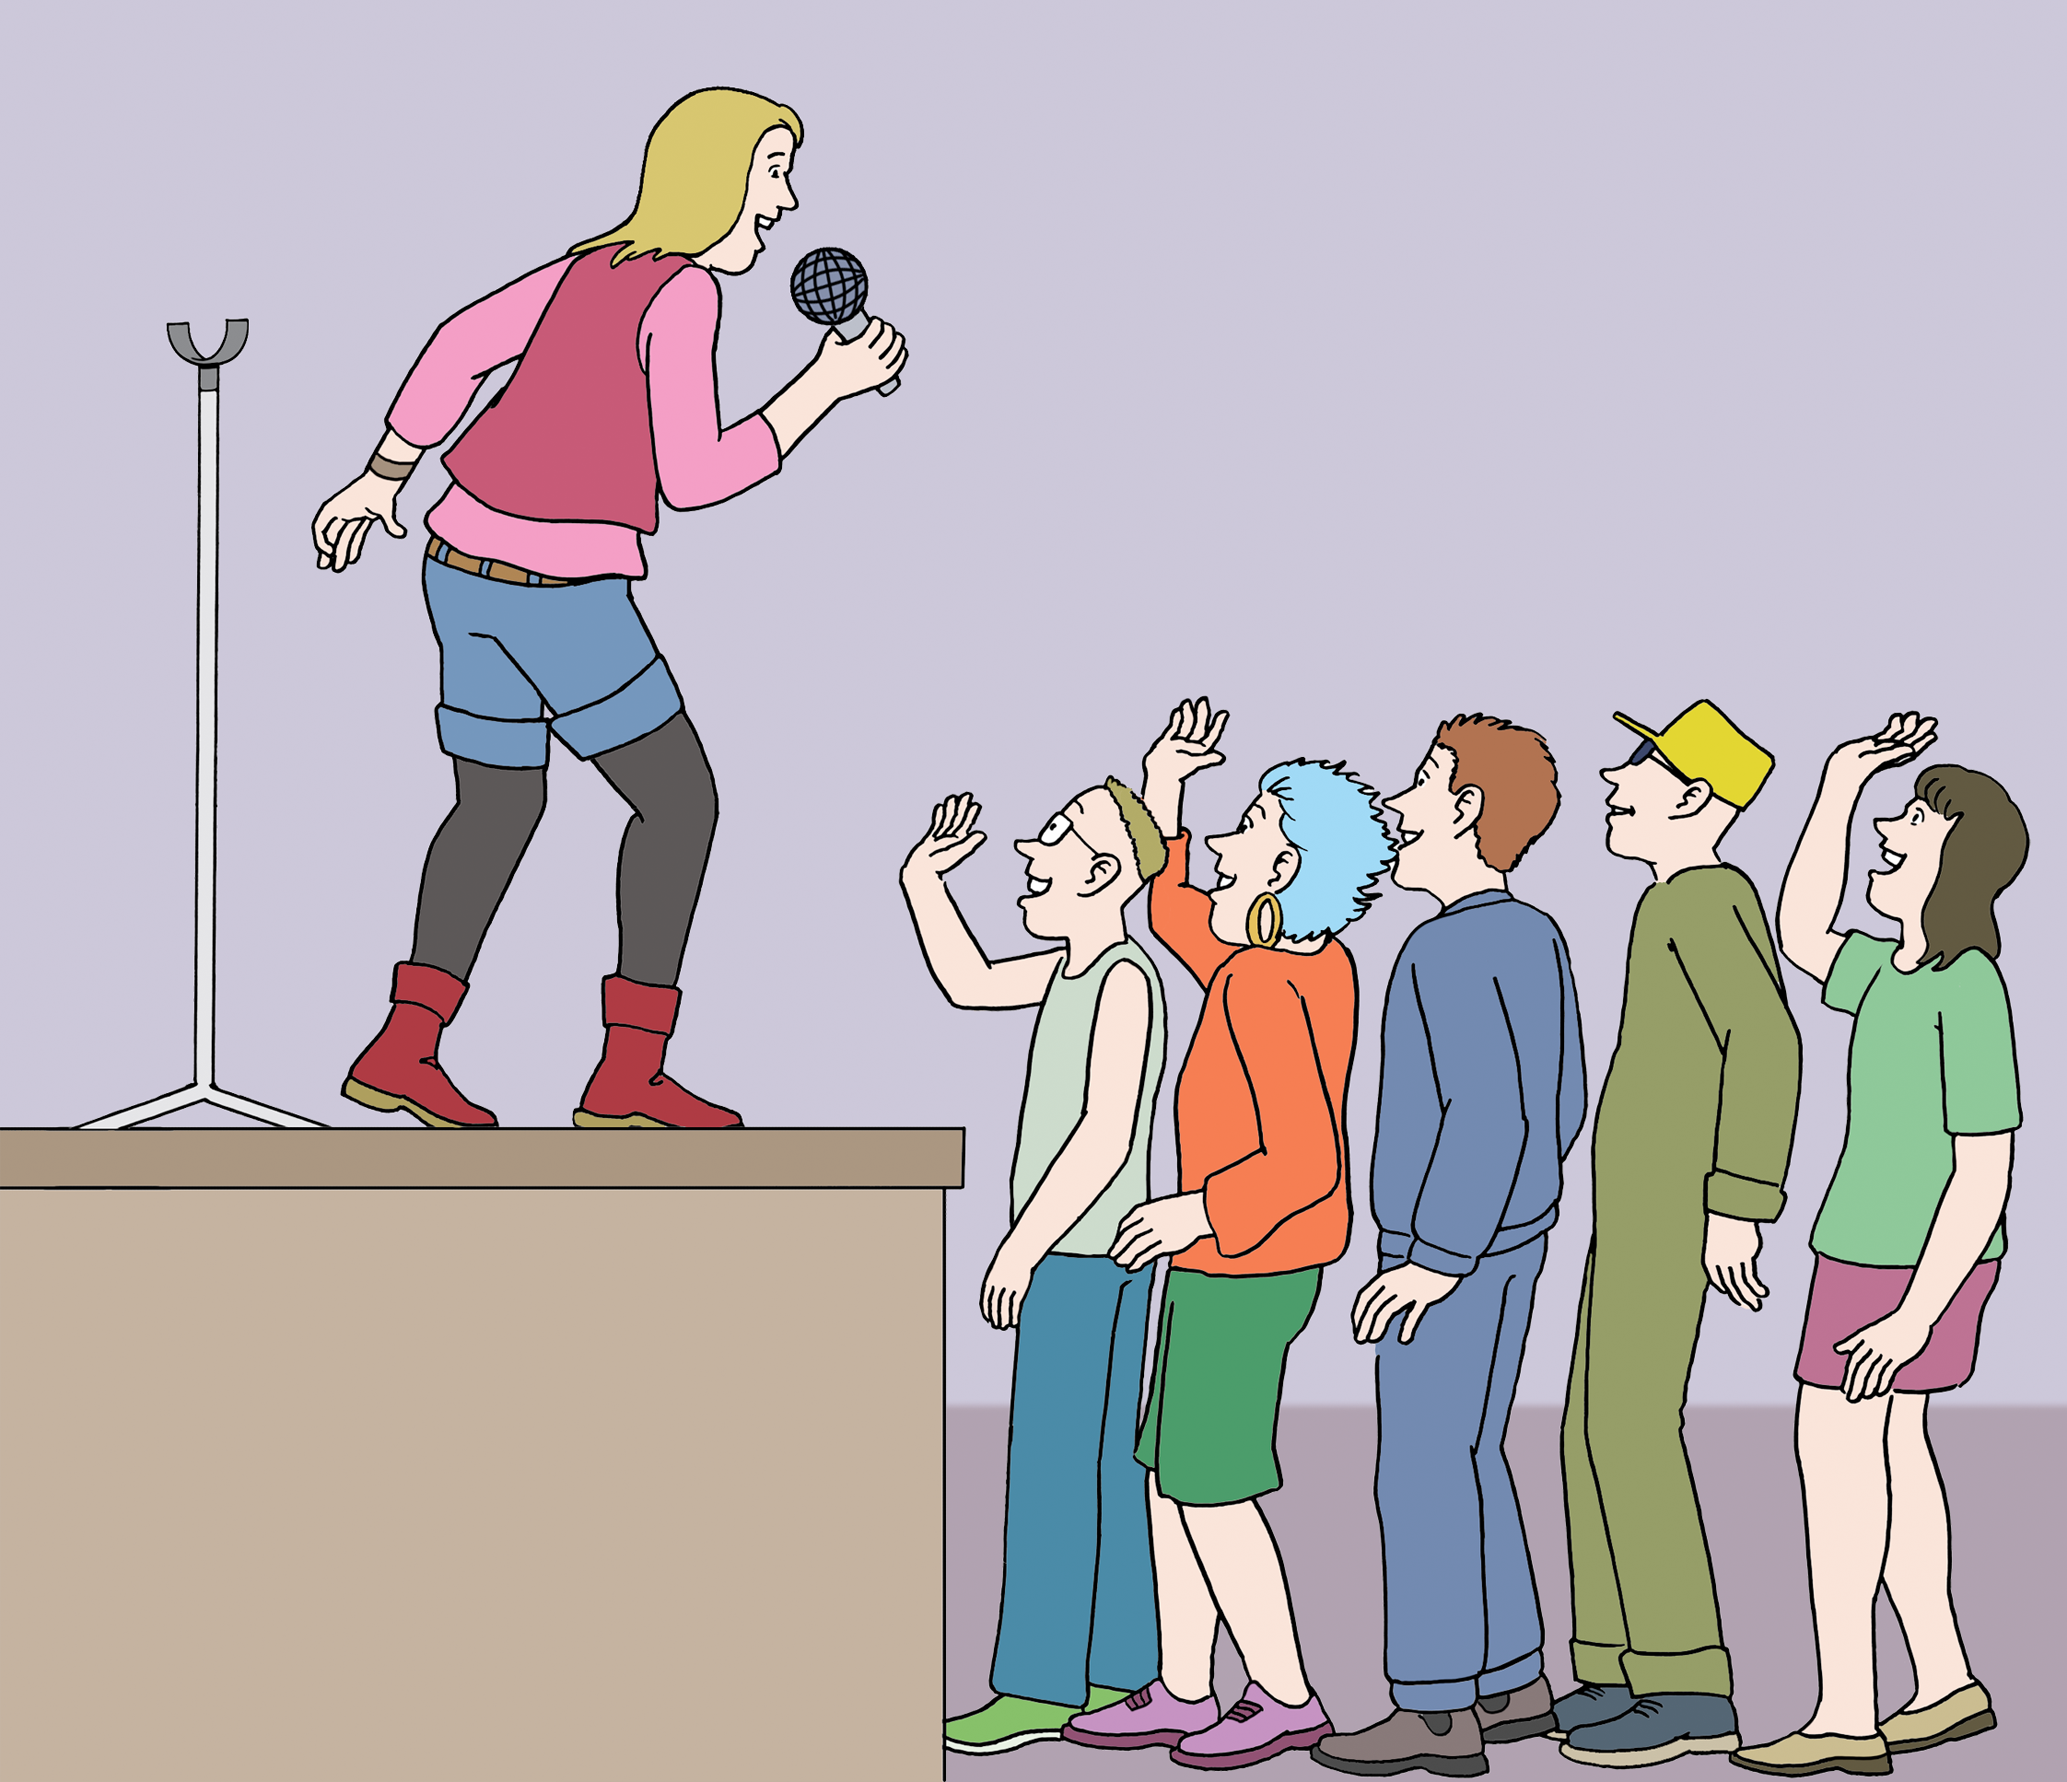 Bildbeschreibung: Ein Person steht auf einer Bühne und singt. Vor der Bühne stehen Leute die zuhören, mitsingen und winken.